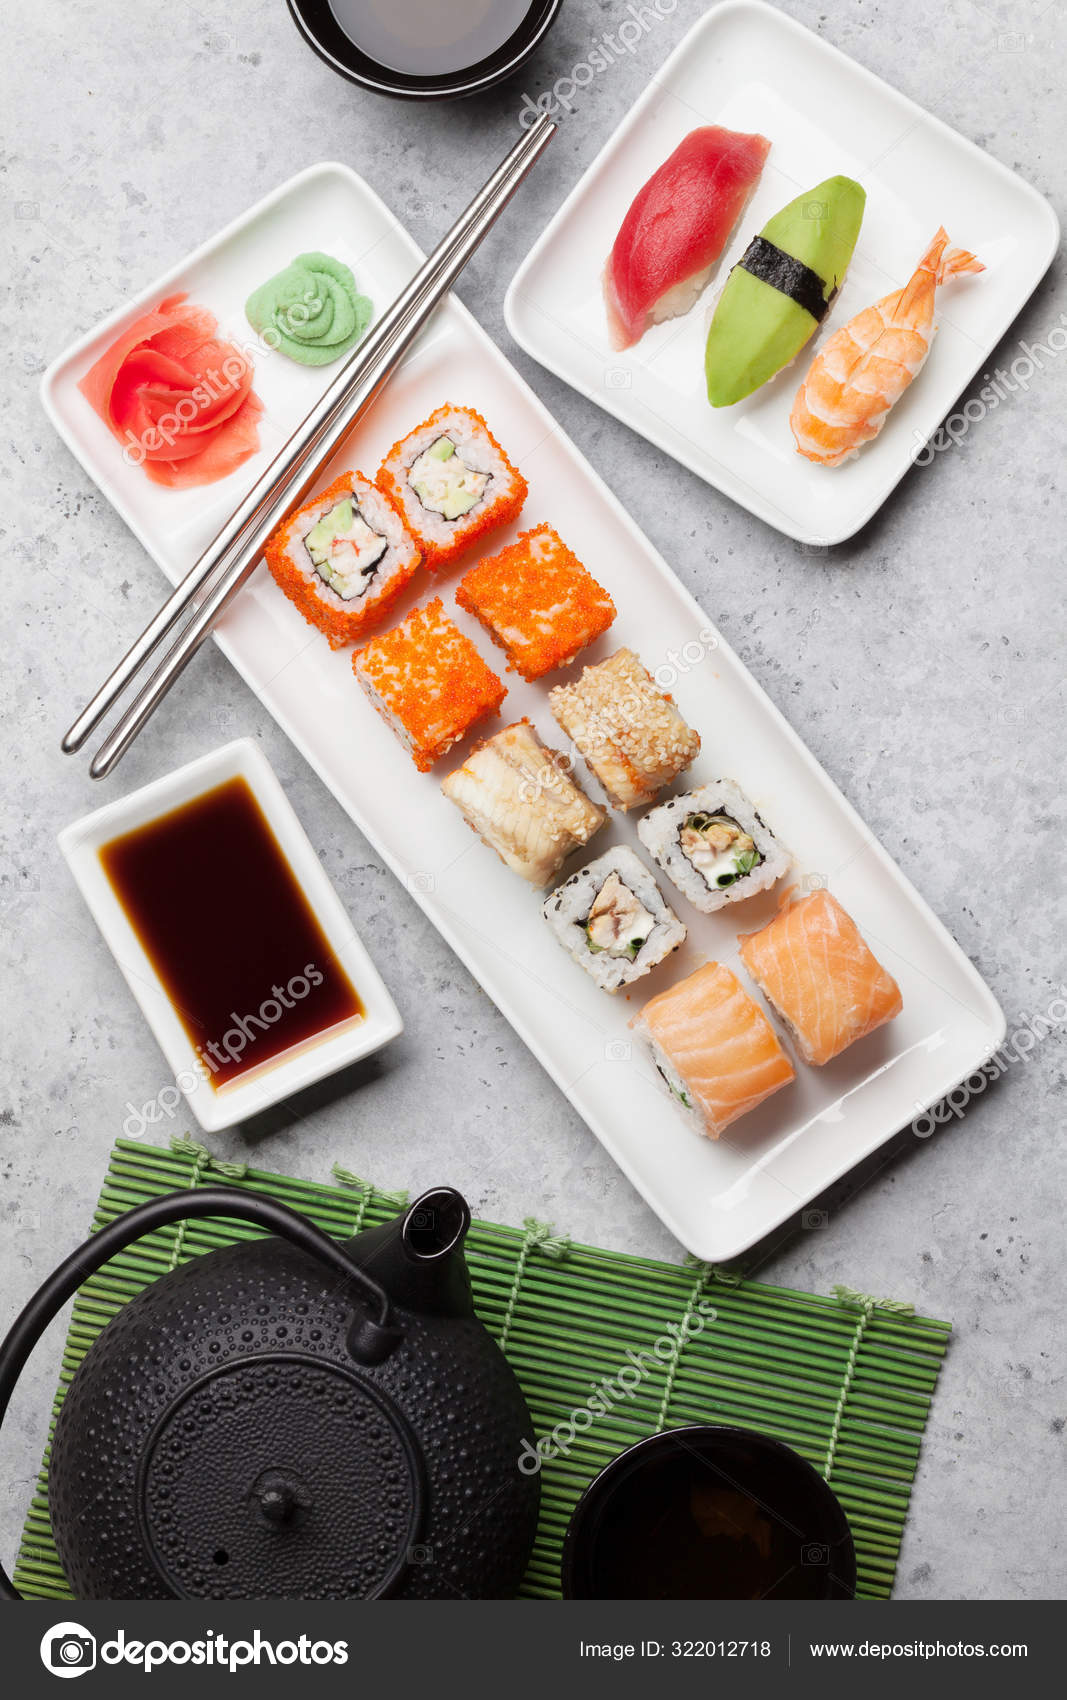 Japanese Sushi Set. Sashimi, Maki Rolls. On Plate Over Stone